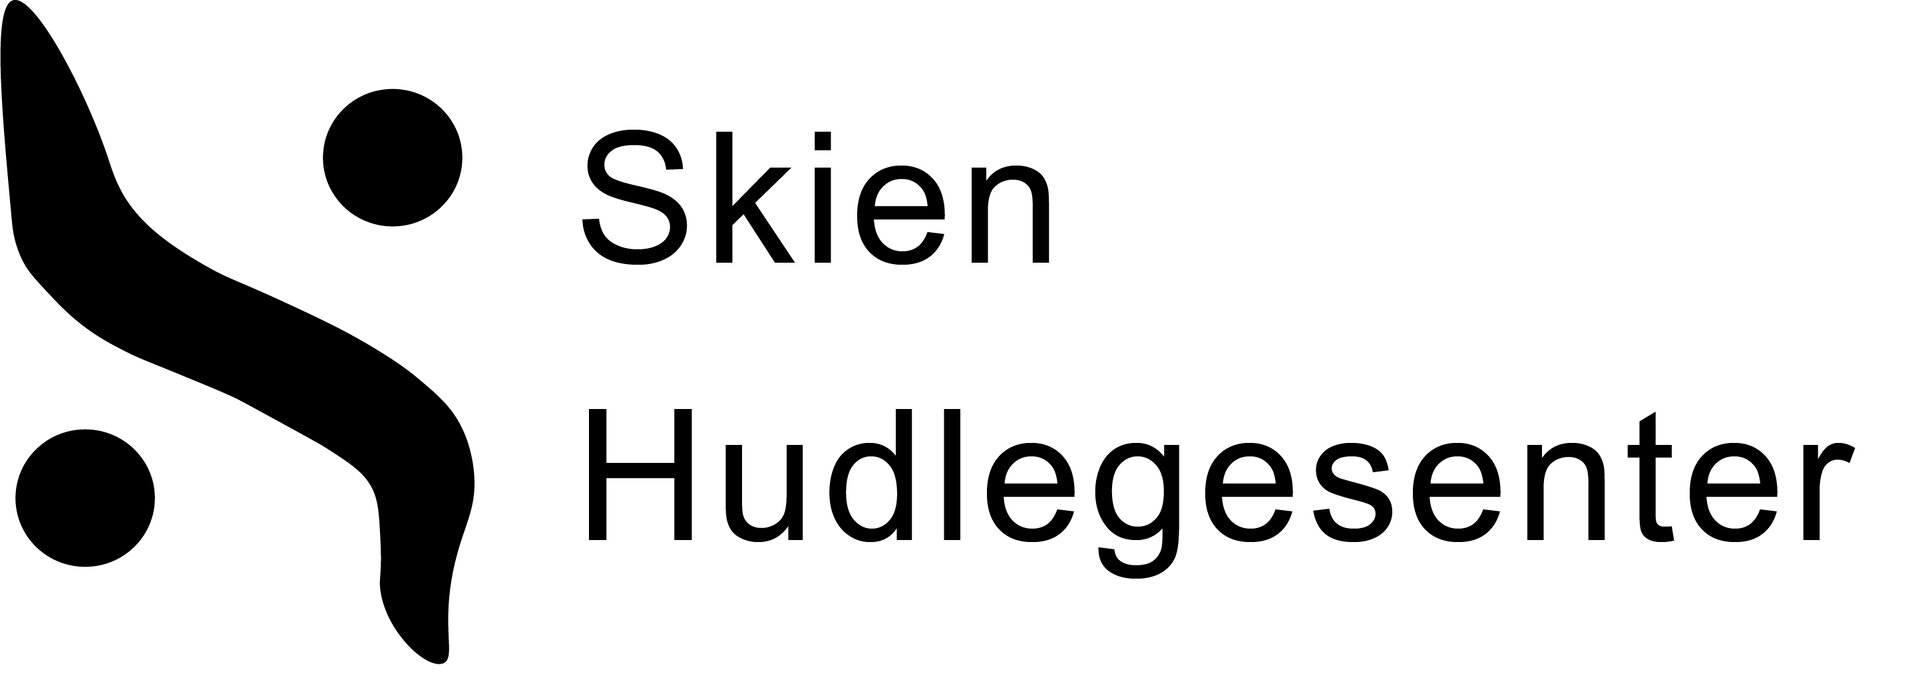 SKIEN HUDLEGESENTER  sin logo